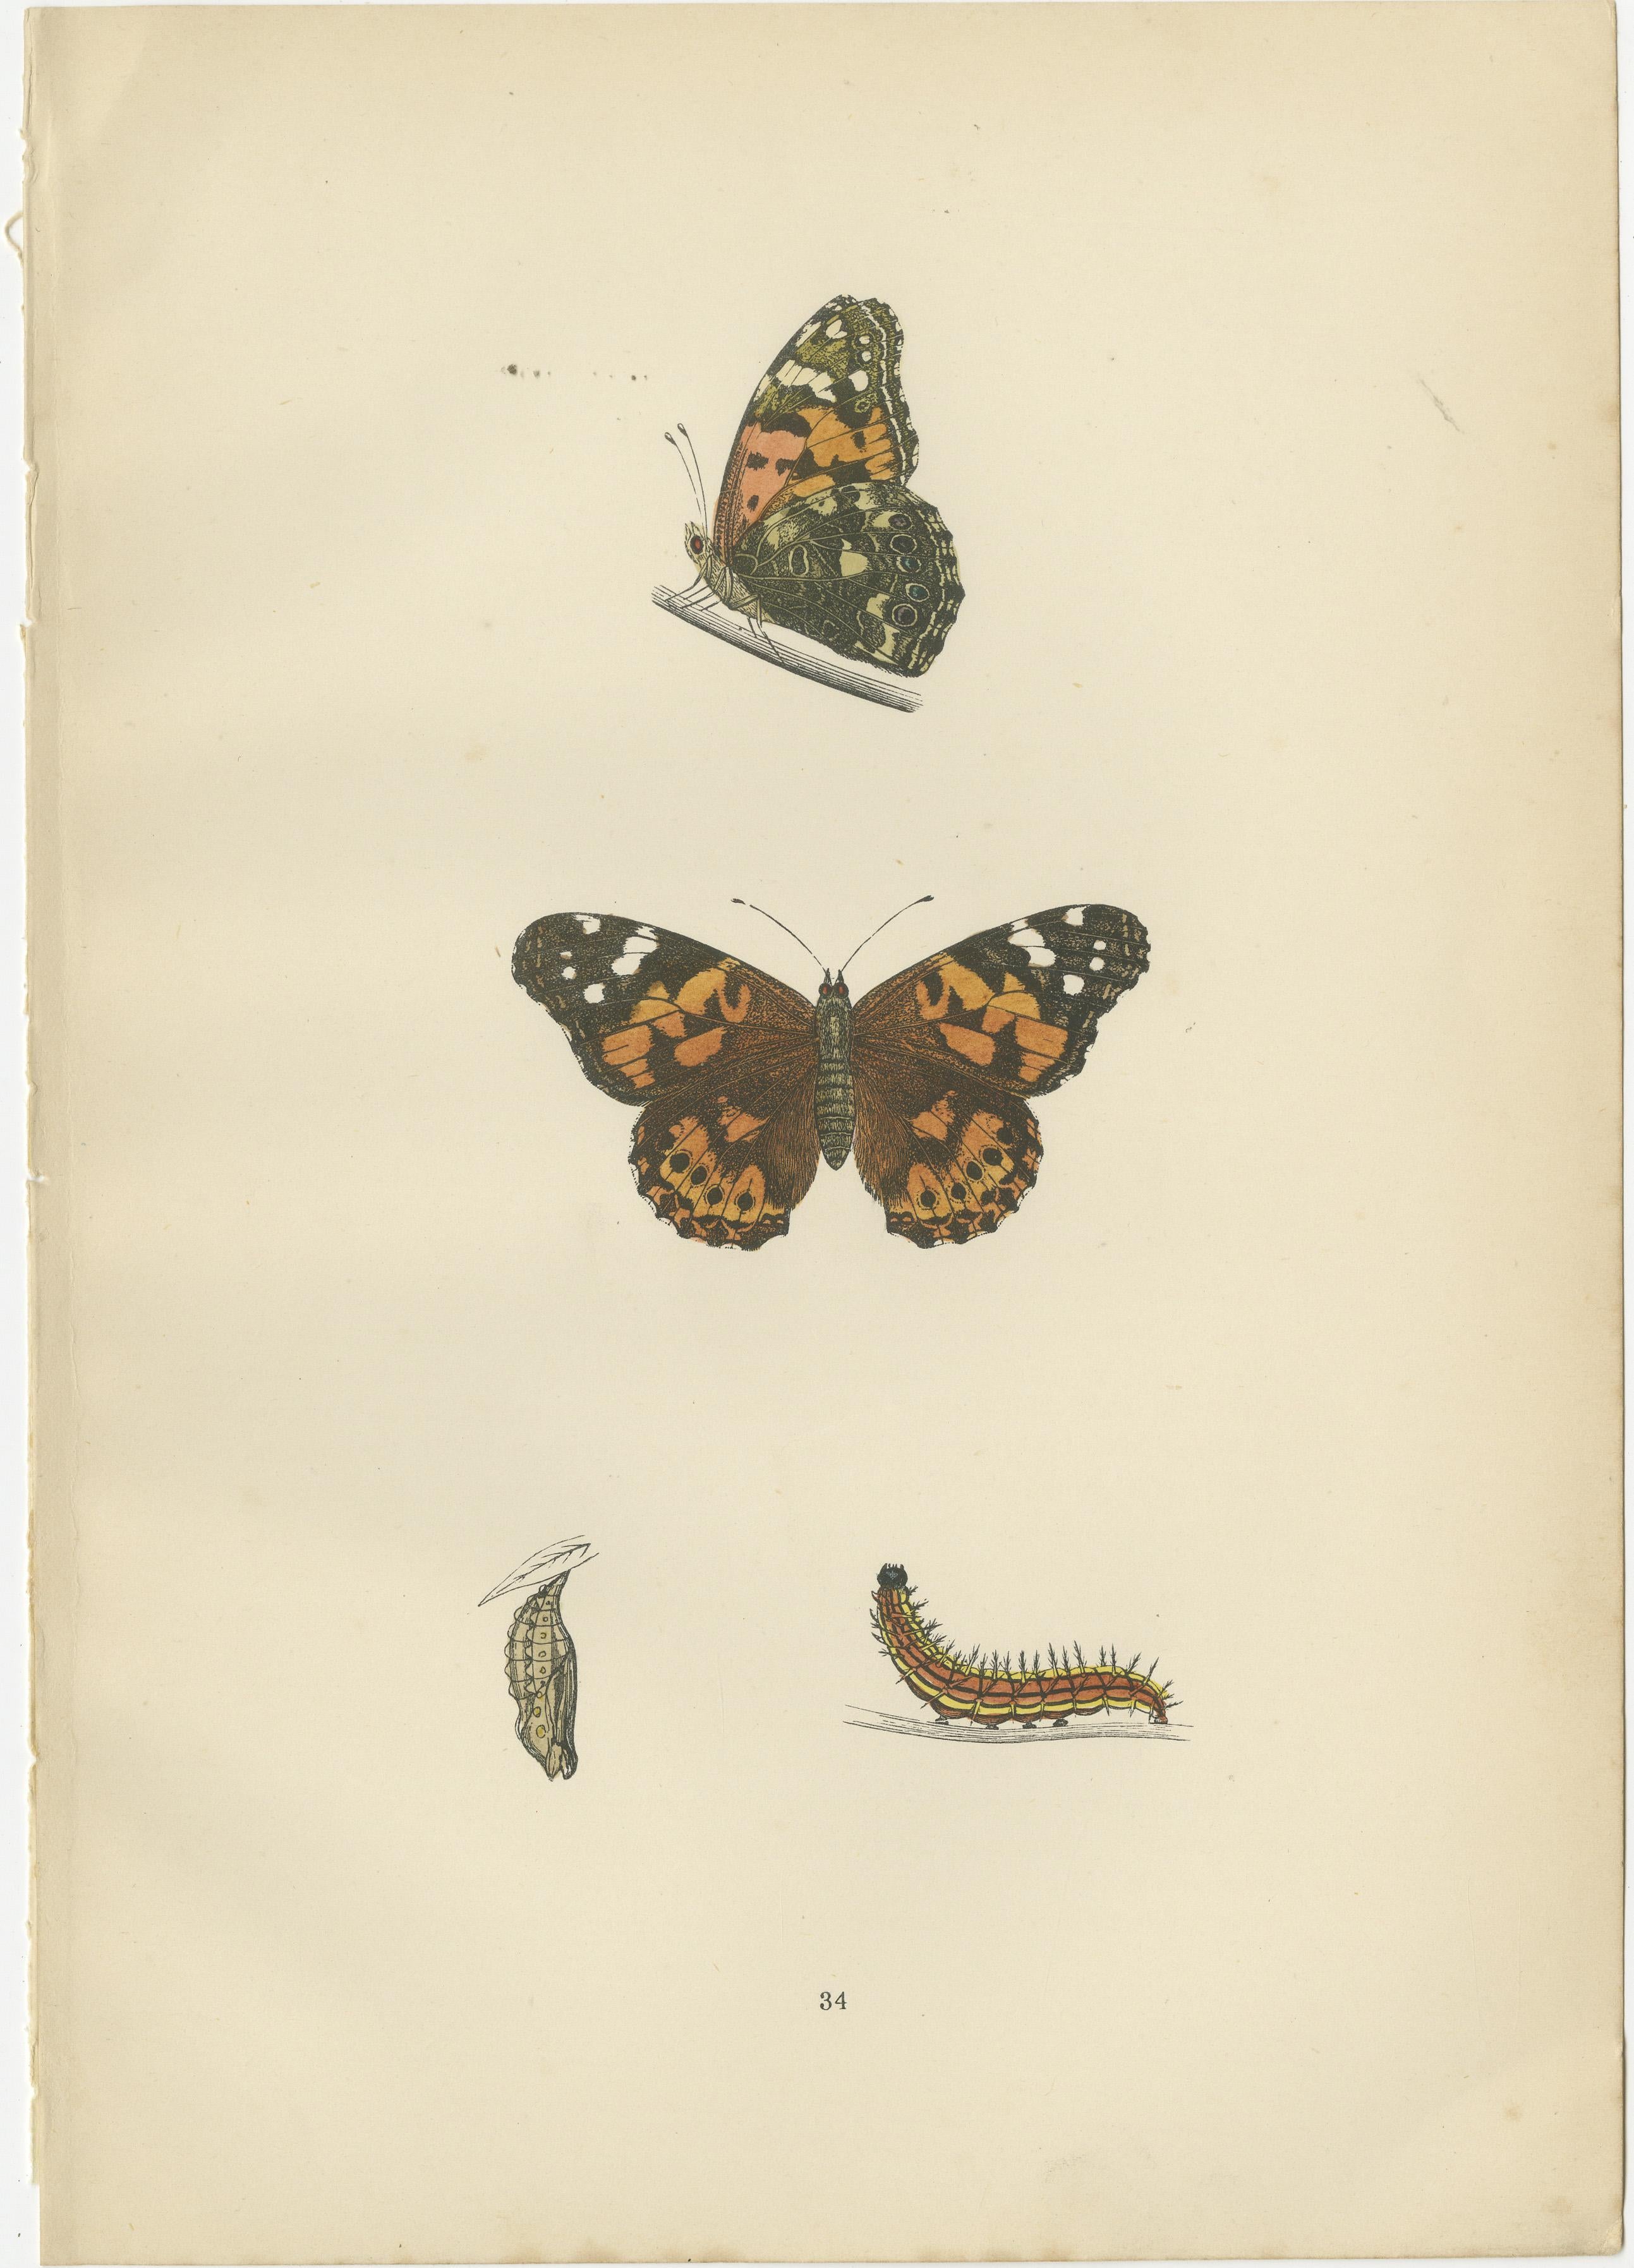 Drei antike handkolorierte Originaldrucke von Schmetterlingen. Sie sind die Gemalte Dame, die Seltene Gemalte Dame und der Purpurkaiser. 

Hier finden Sie eine detailliertere Beschreibung der einzelnen Arten, die sich auf den Kontext von 